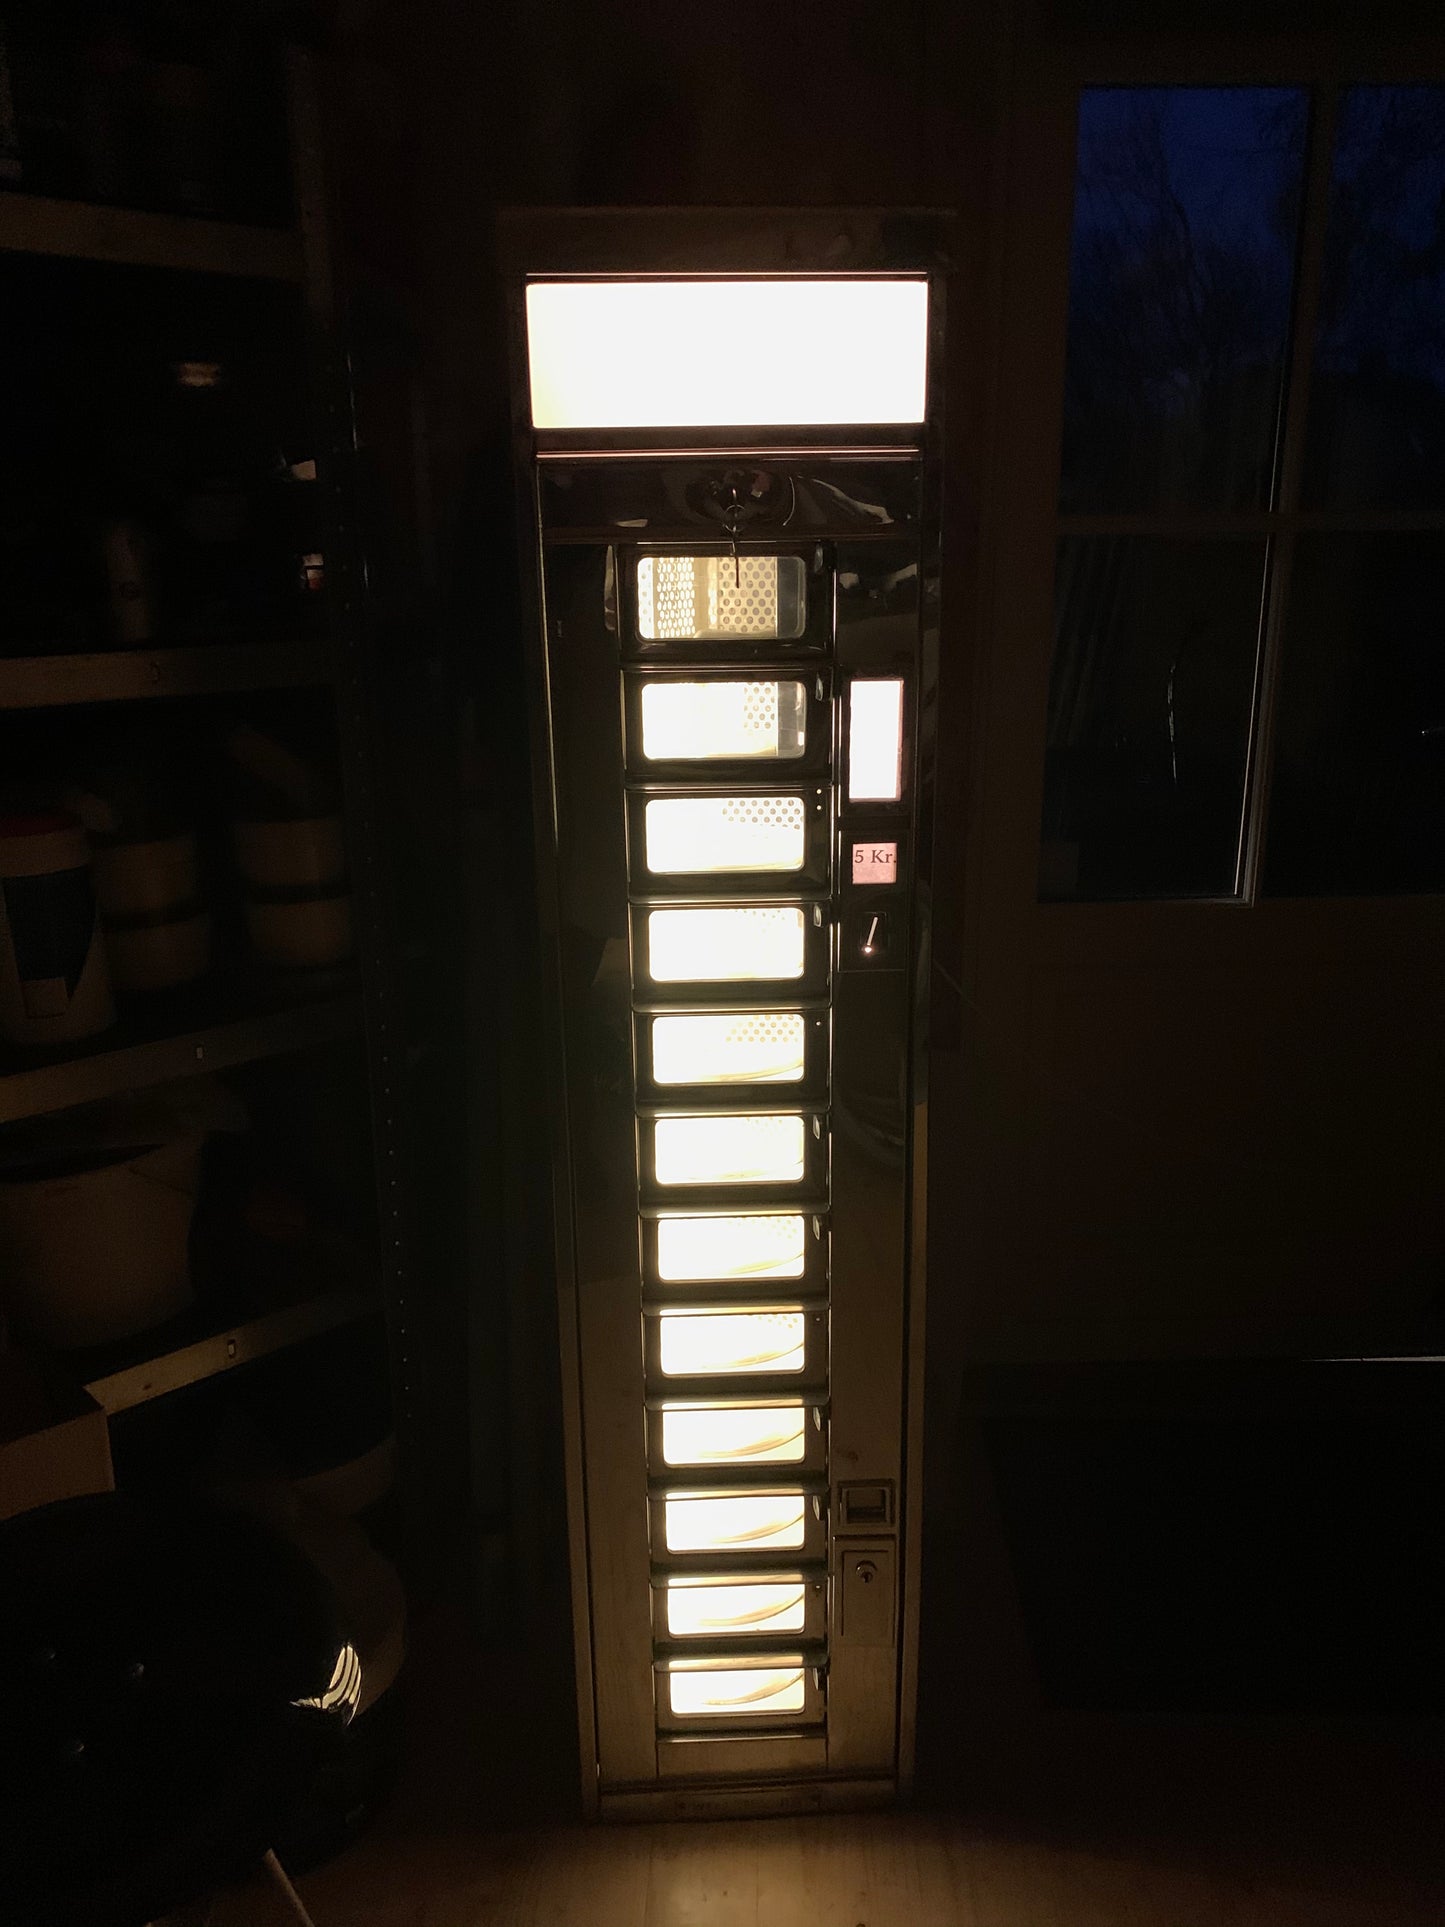 Fin og sjældent eksemplar af Wittenborg automaten med lys